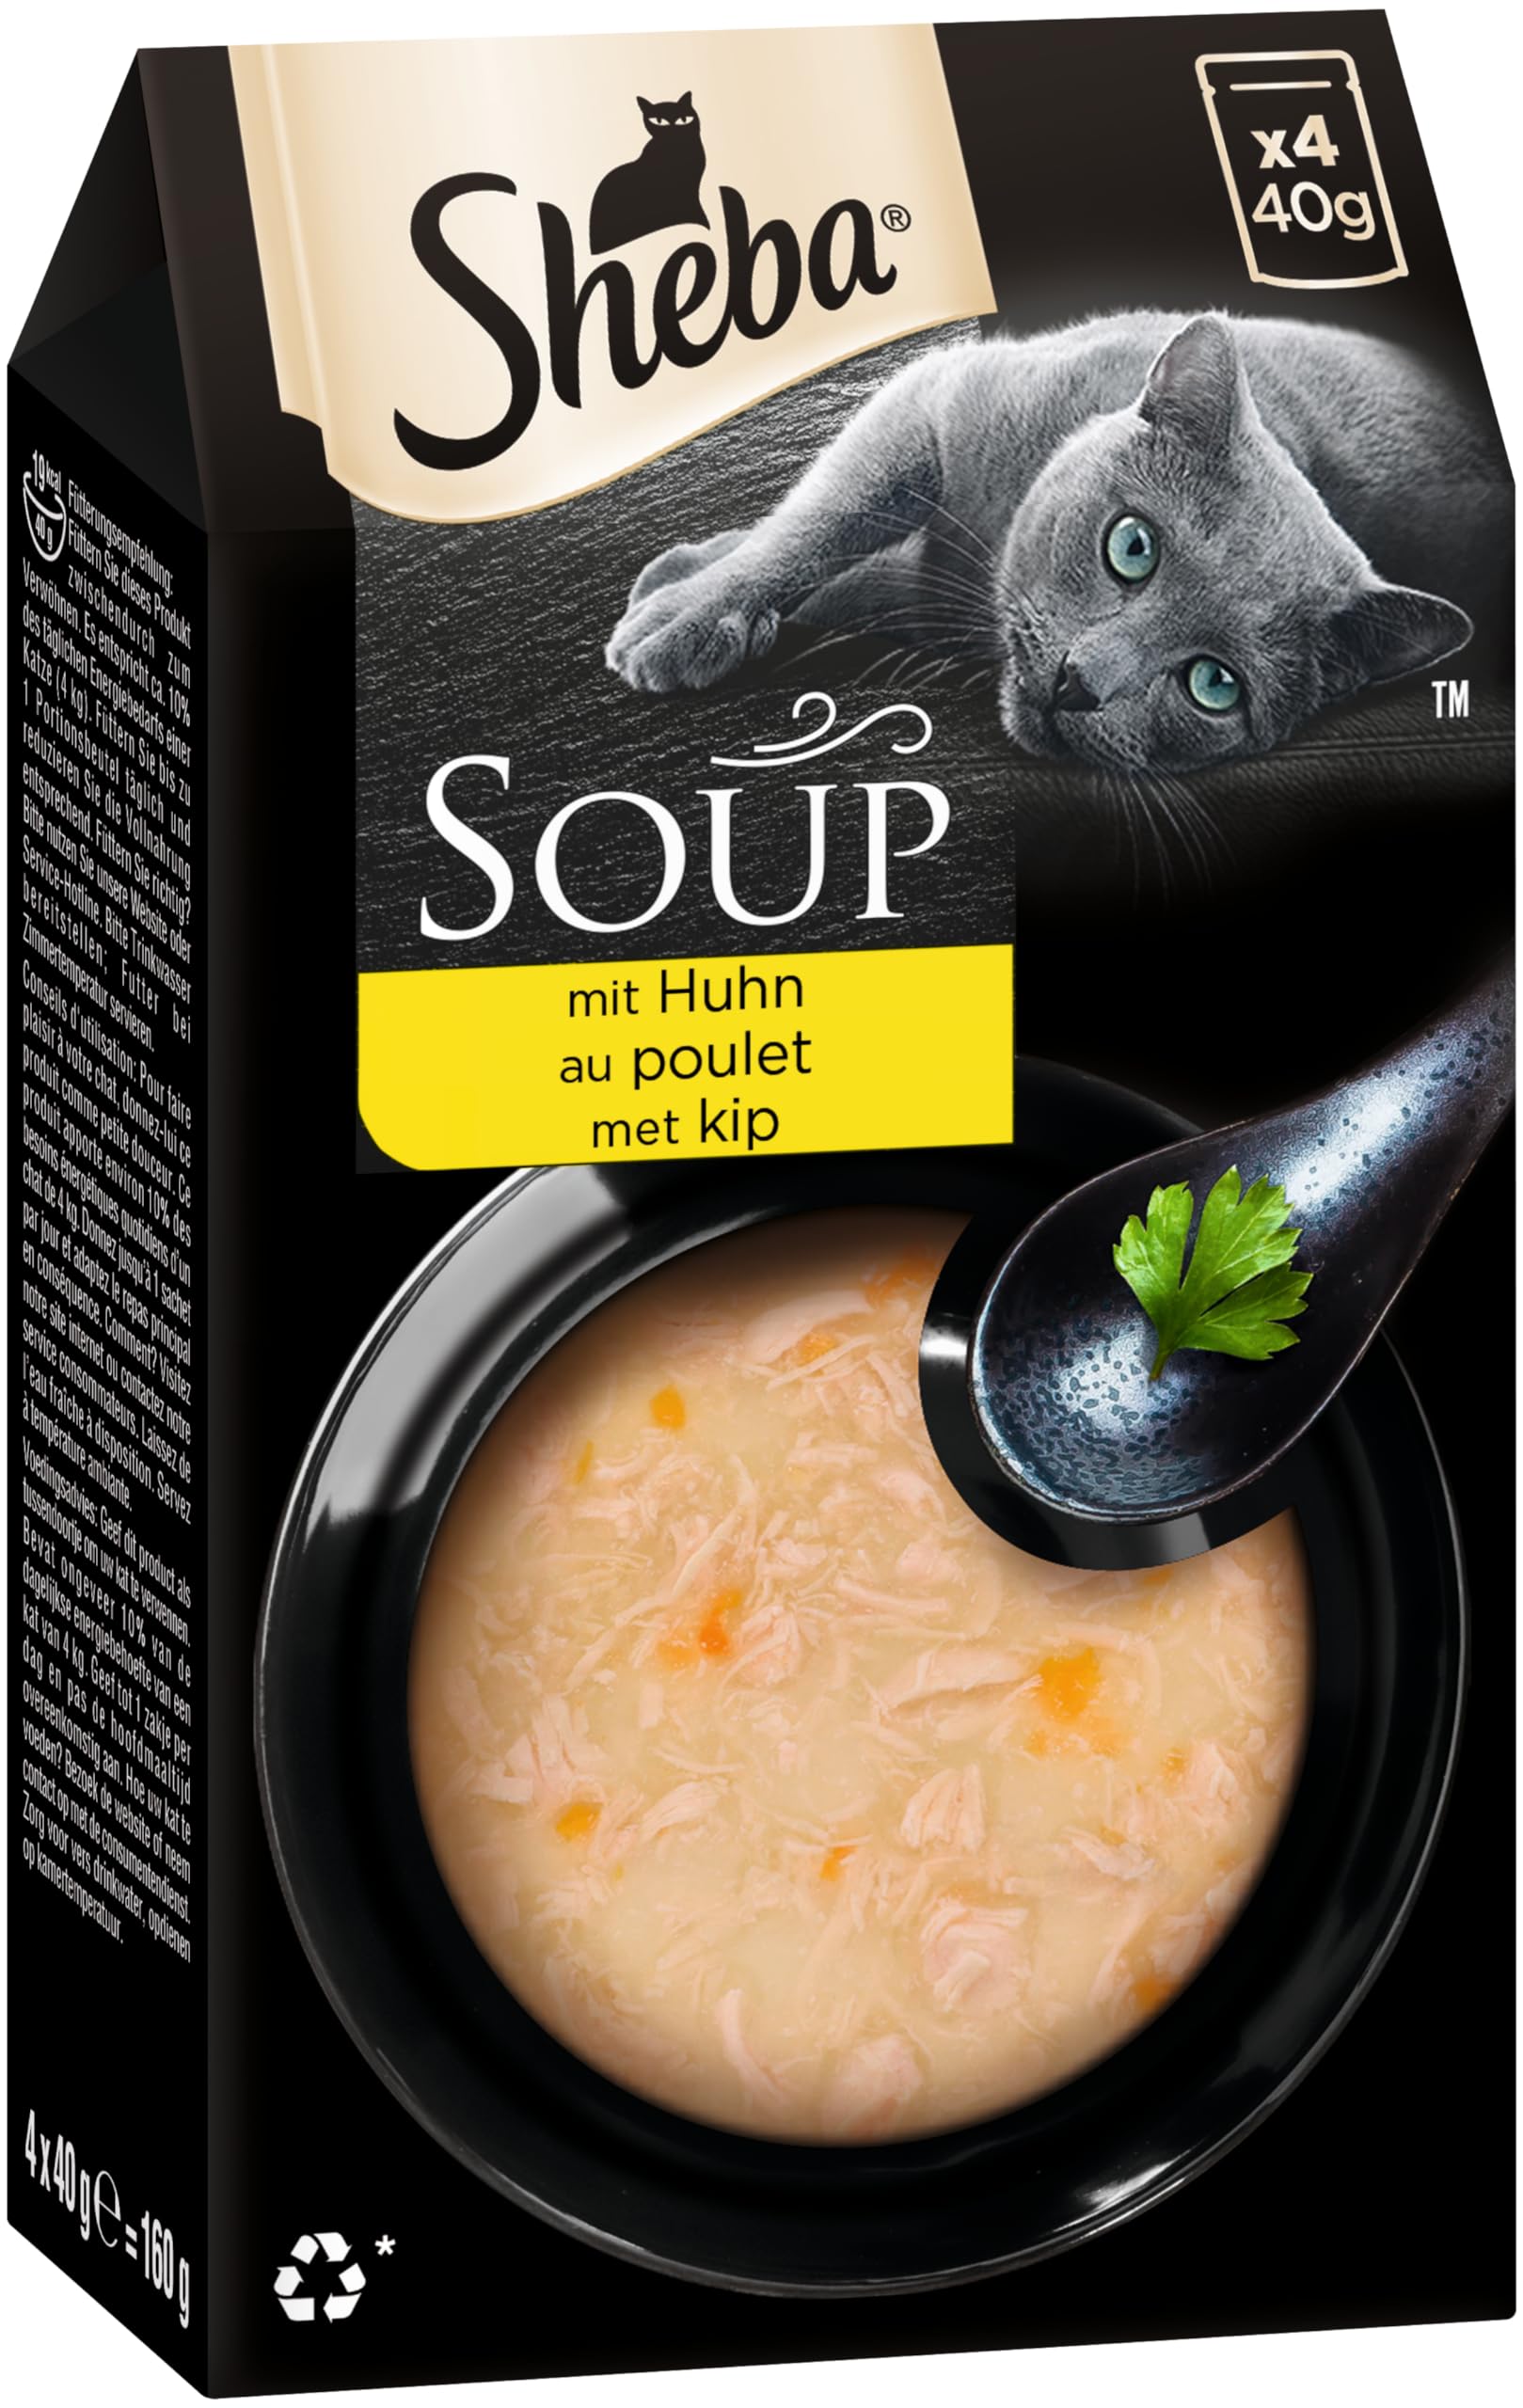 Sheba Multipack Soup - Katzennassfutter im Portionsbeutel - Huhn - 40 x 40g